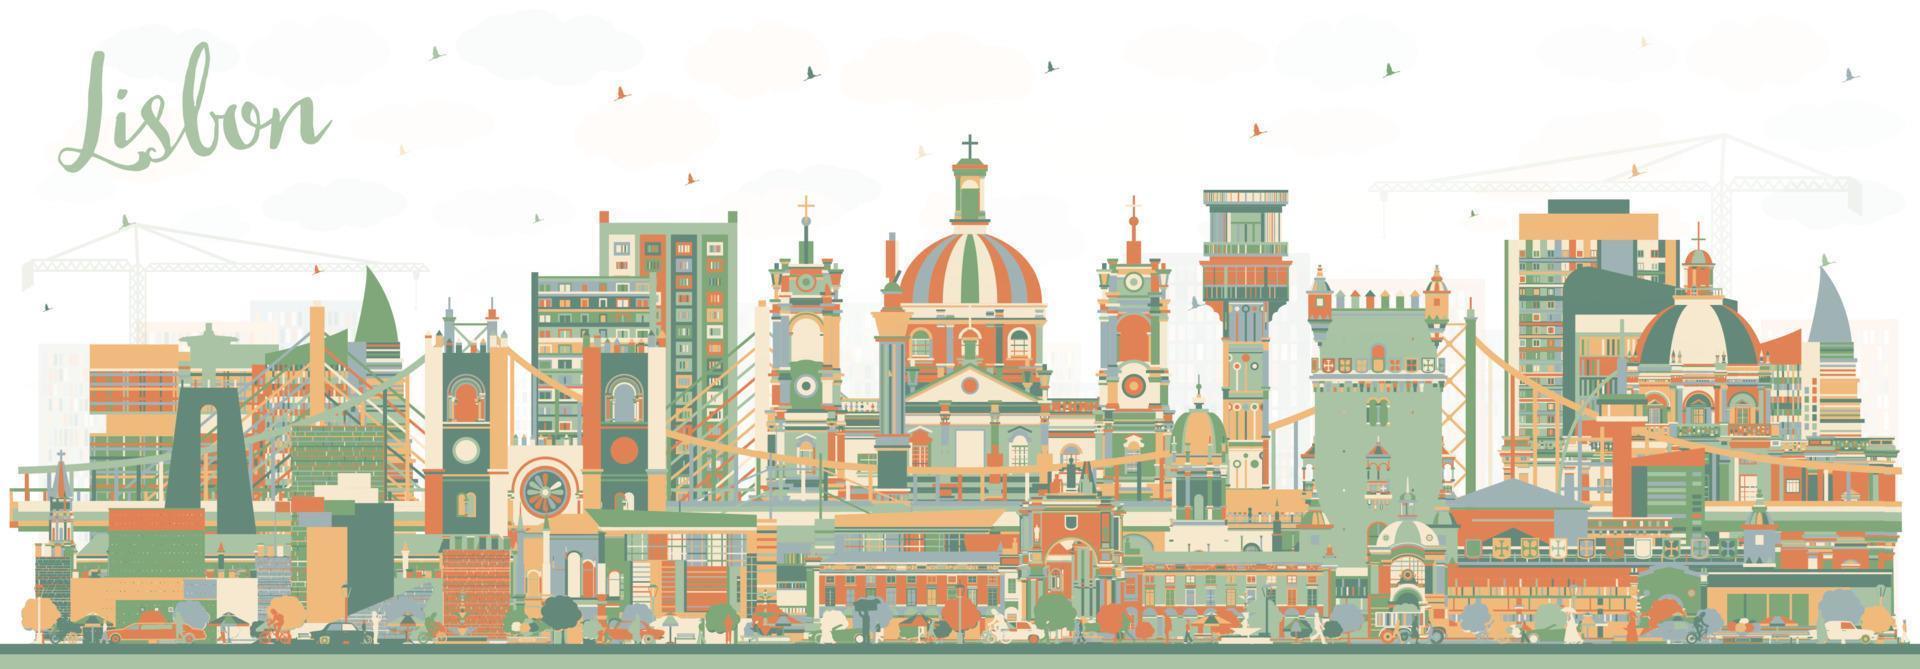 horizonte de la ciudad de lisboa portugal con edificios de color. vector